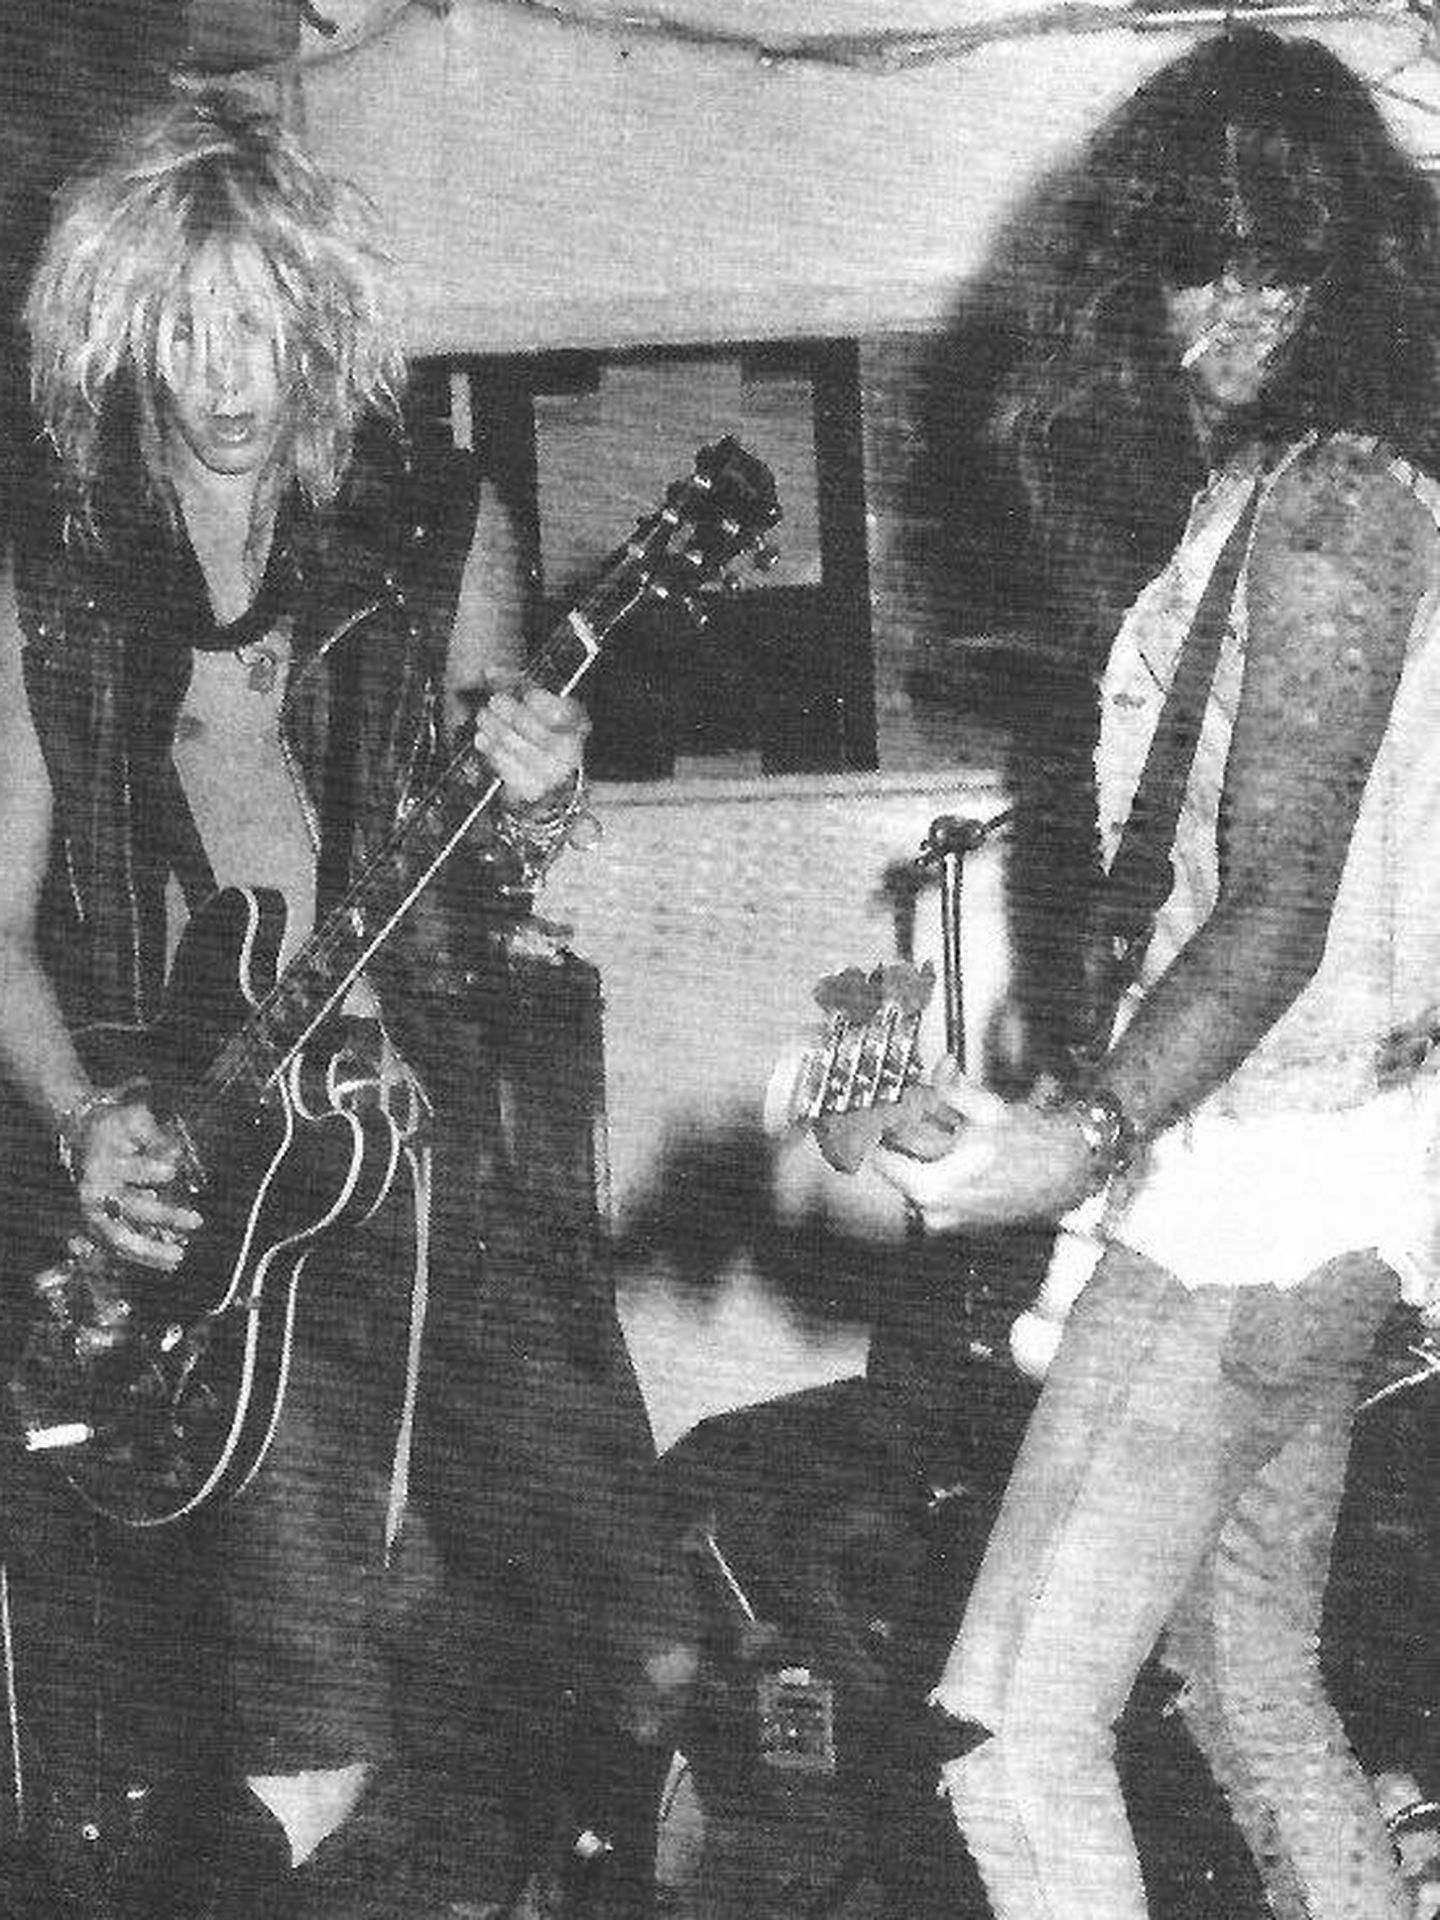 Duff y Todd